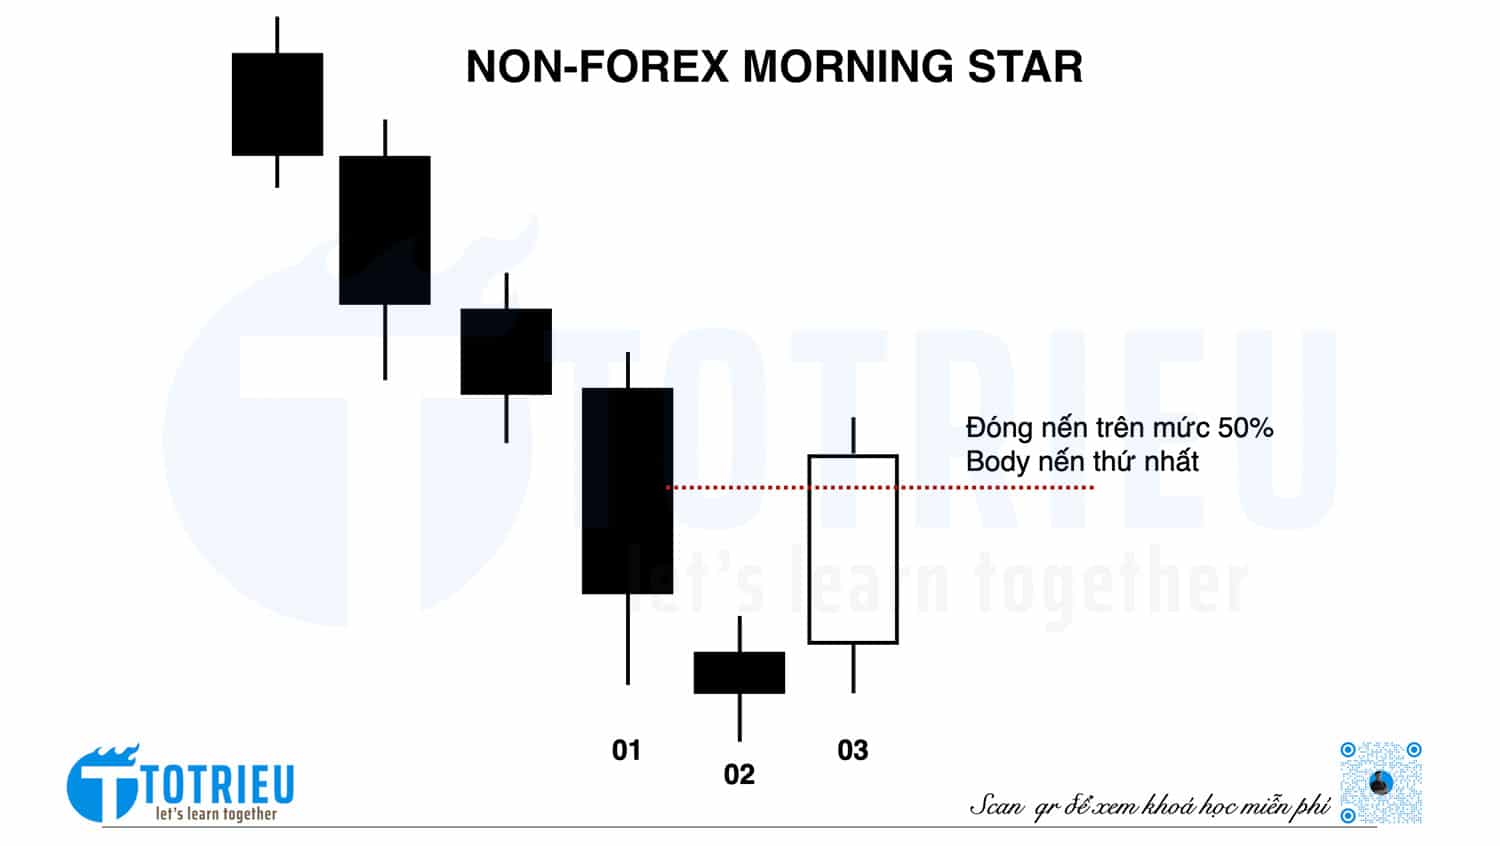 Mô hình nến Morning Star trong các thị trường khác (Non-Forex)